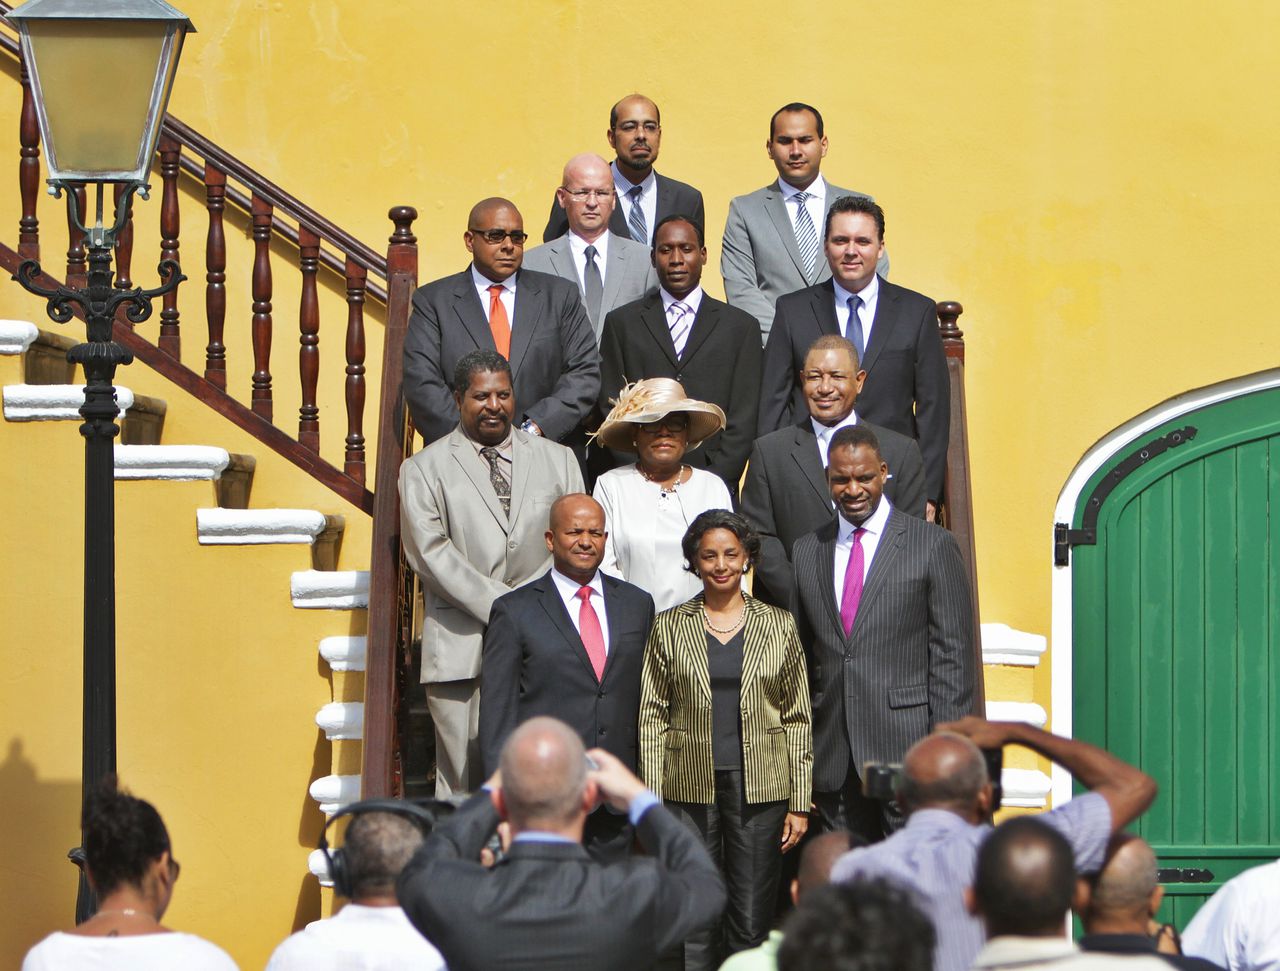 Het kabinet van Curaçao. Steven Martina staat rechts onderaan.